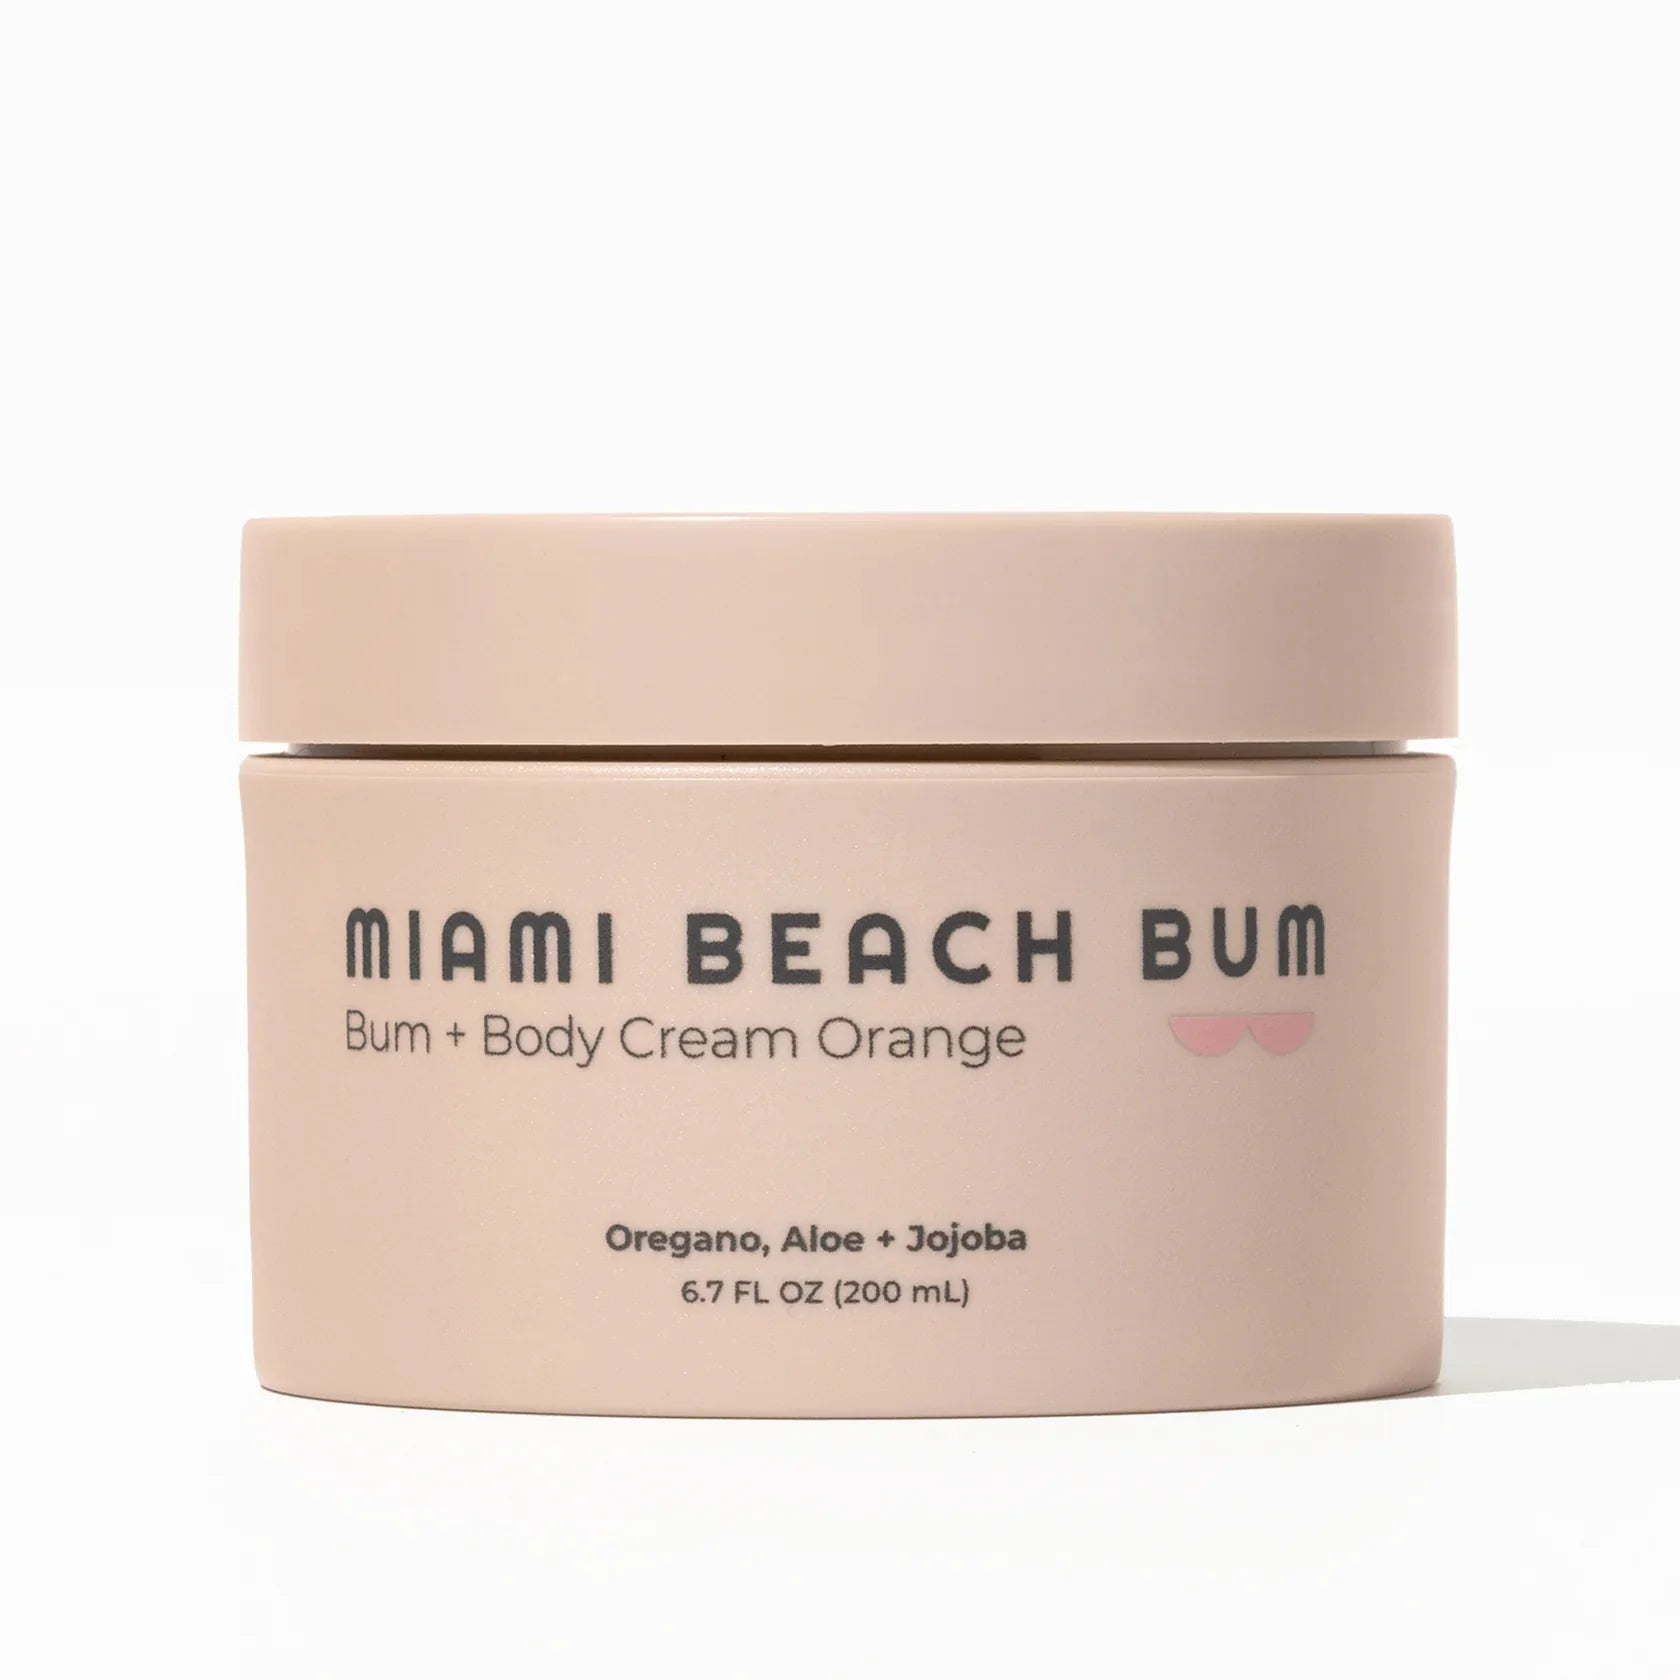 Miami Beach Bum Bum + Body Cream Orange